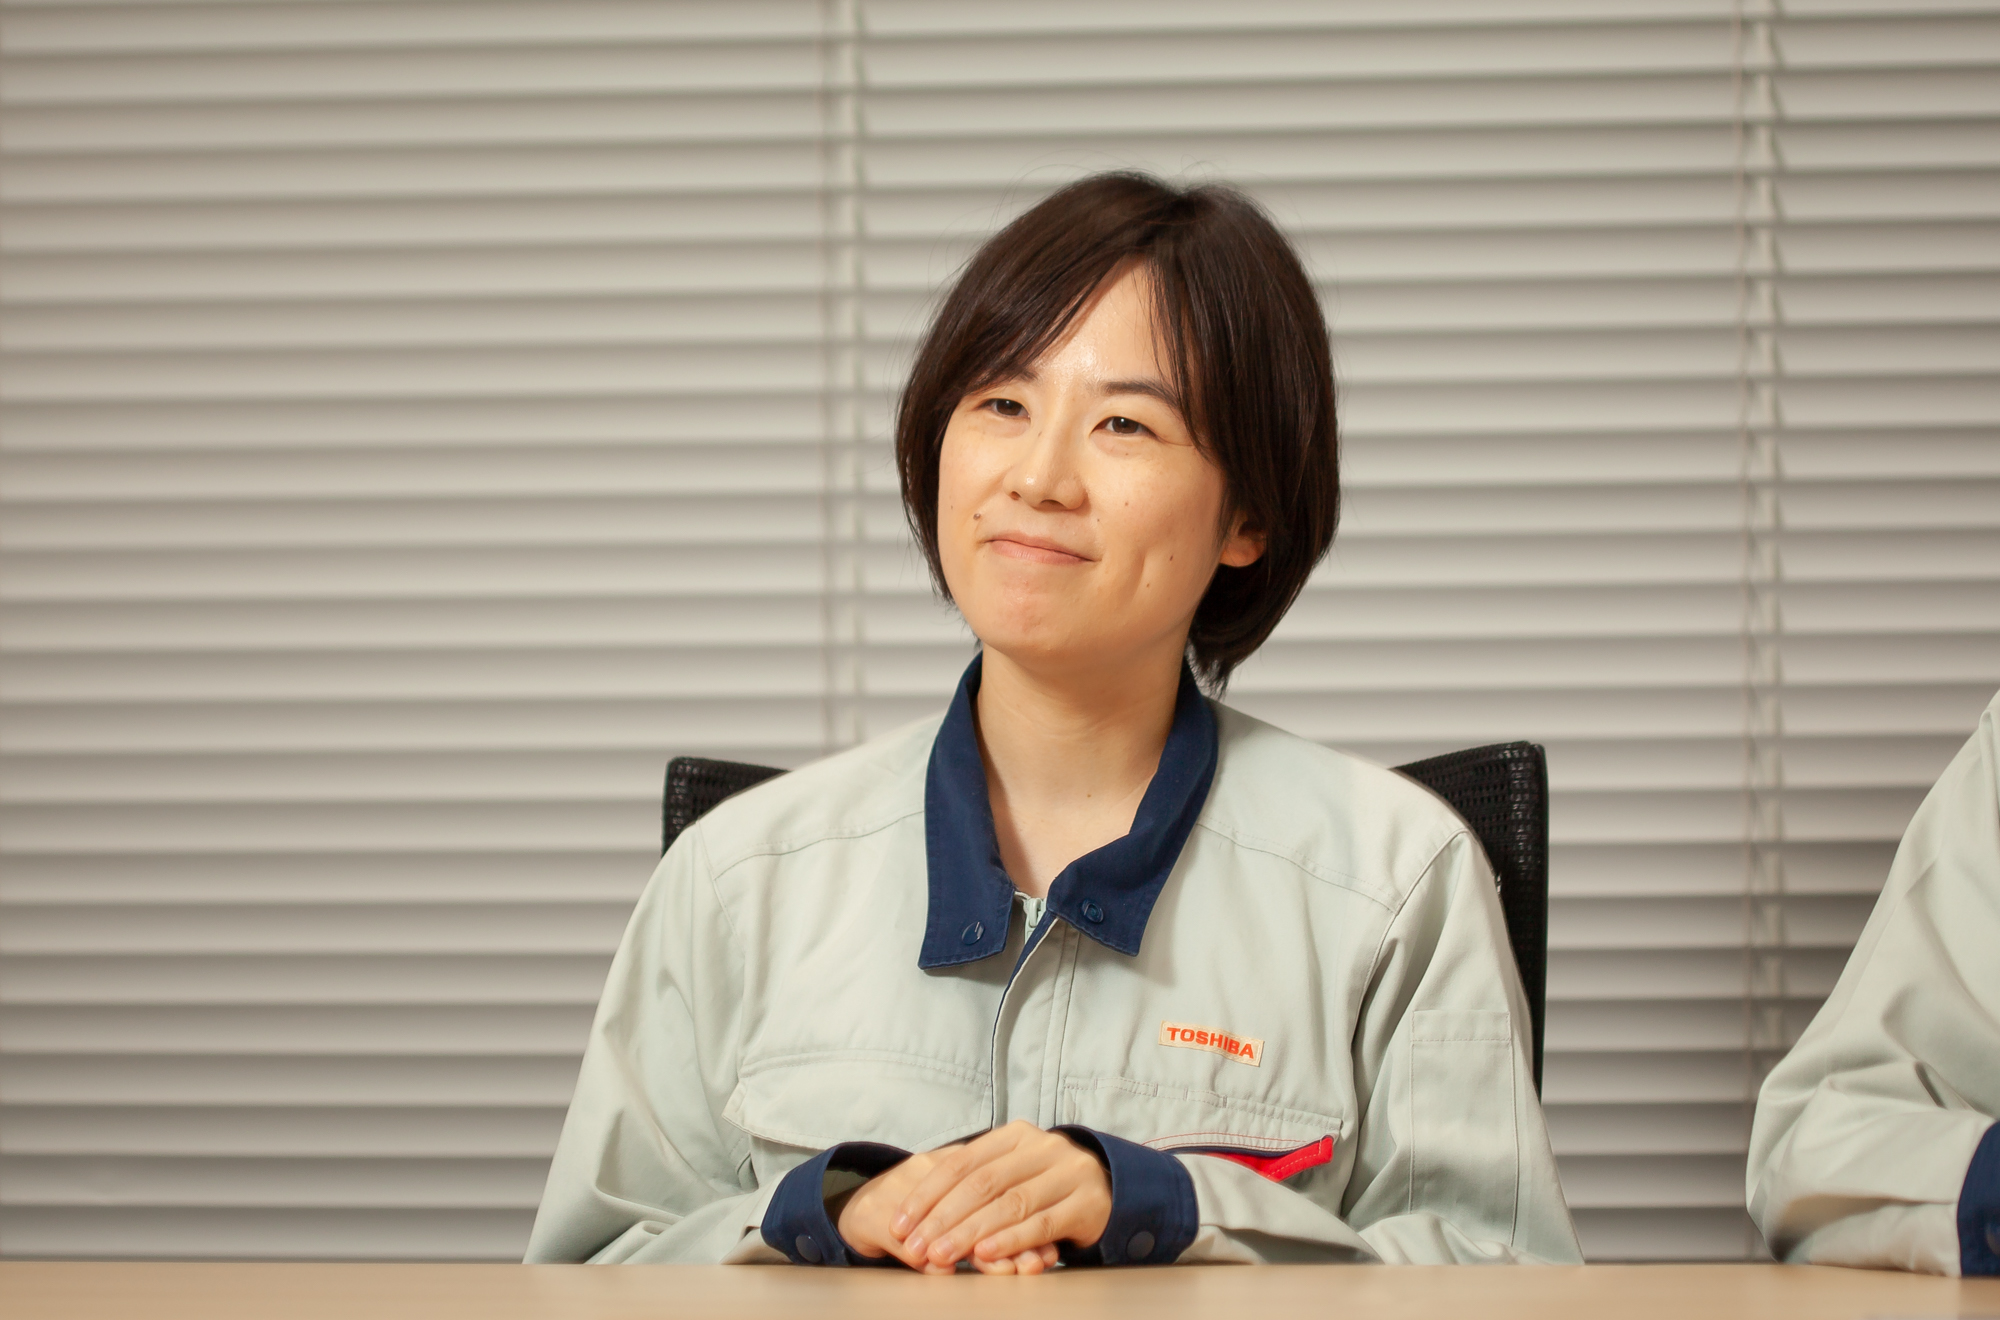 Kaori Sakaguchi